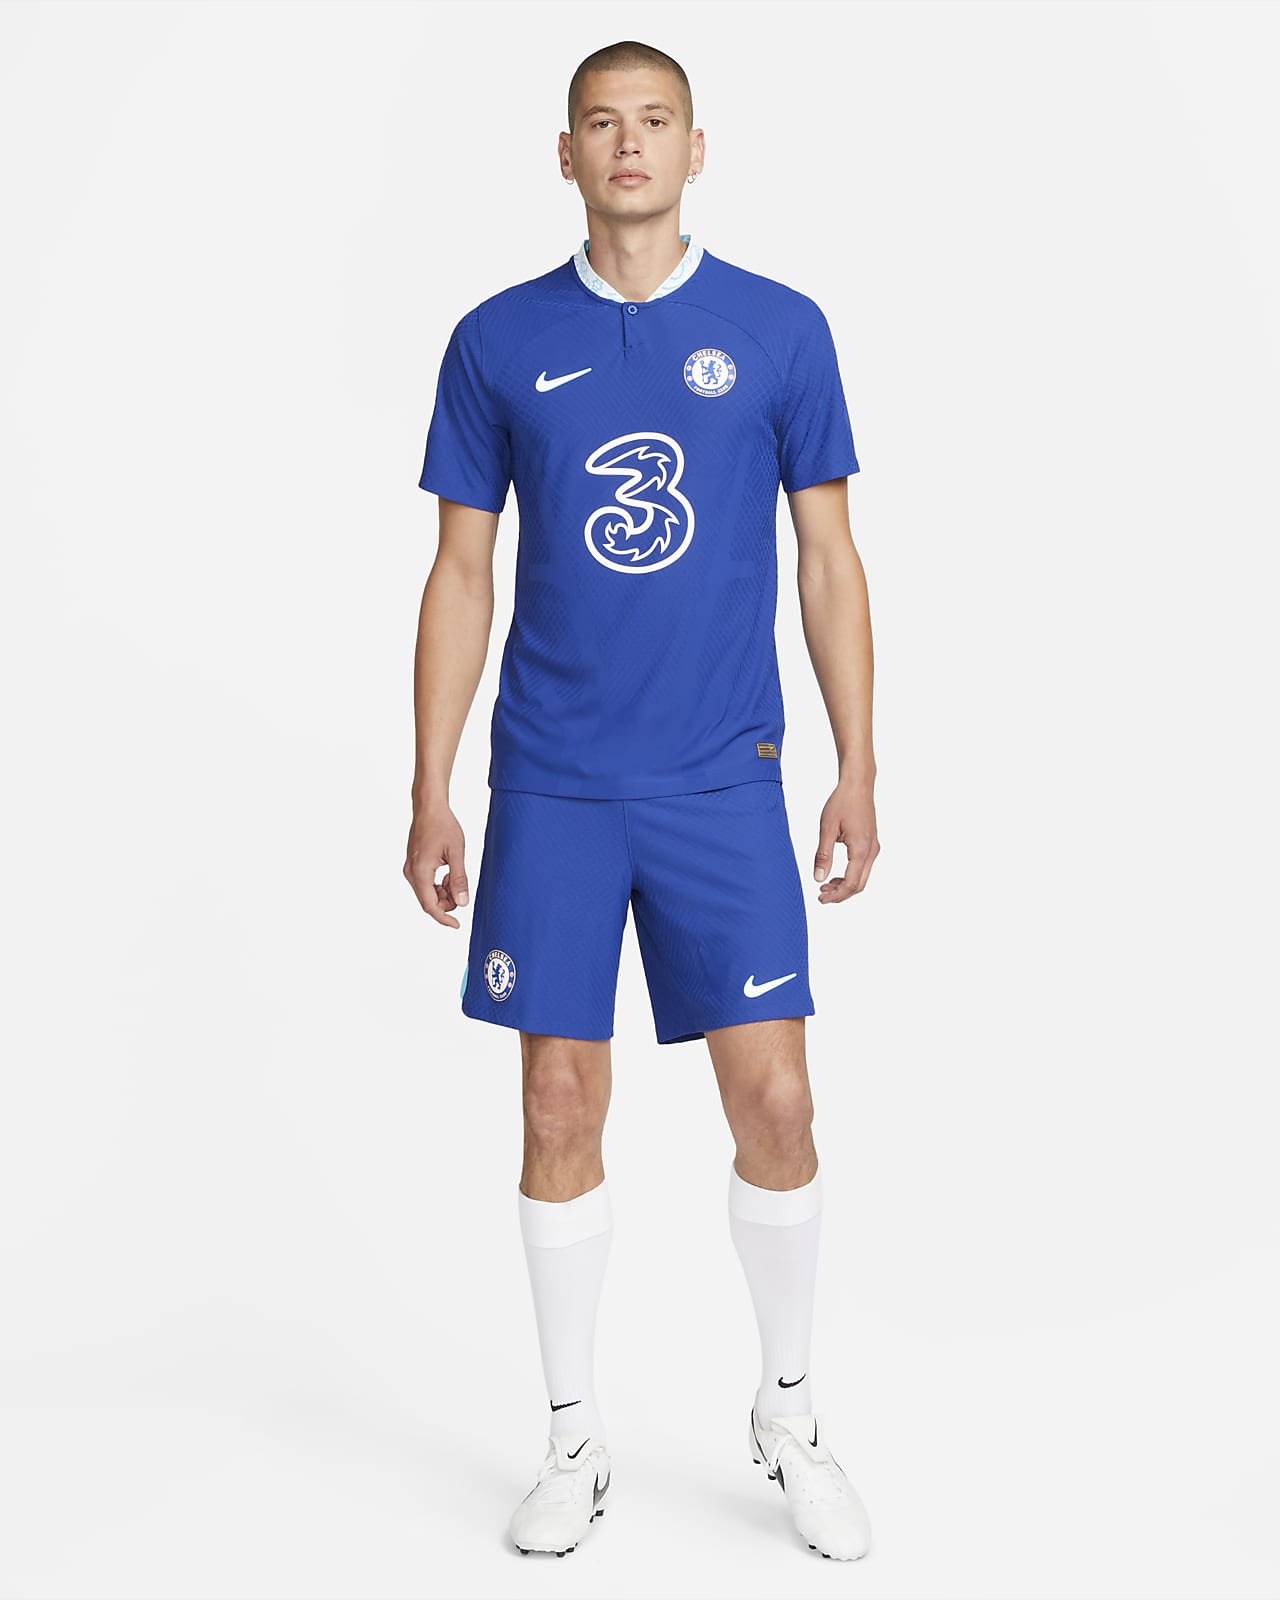 Chelsea F.C. 2022/23 Home Nike Dri-FIT ADV Football Shirt. Nike LU